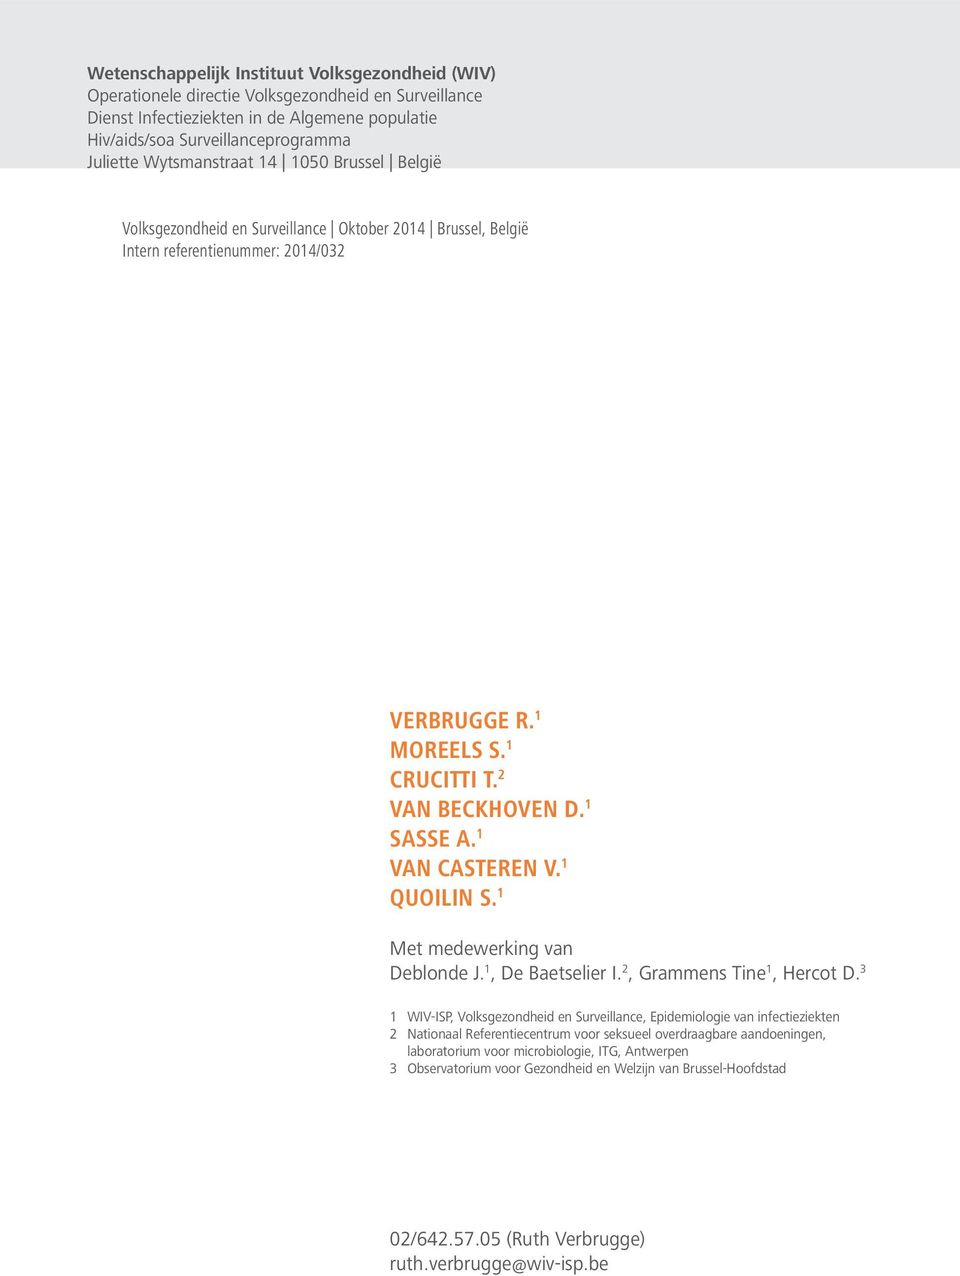 1 VAN CASTEREN V. 1 Quoilin S. 1 Met medewerking van Deblonde J. 1, De Baetselier I. 2, Grammens Tine 1, Hercot D.